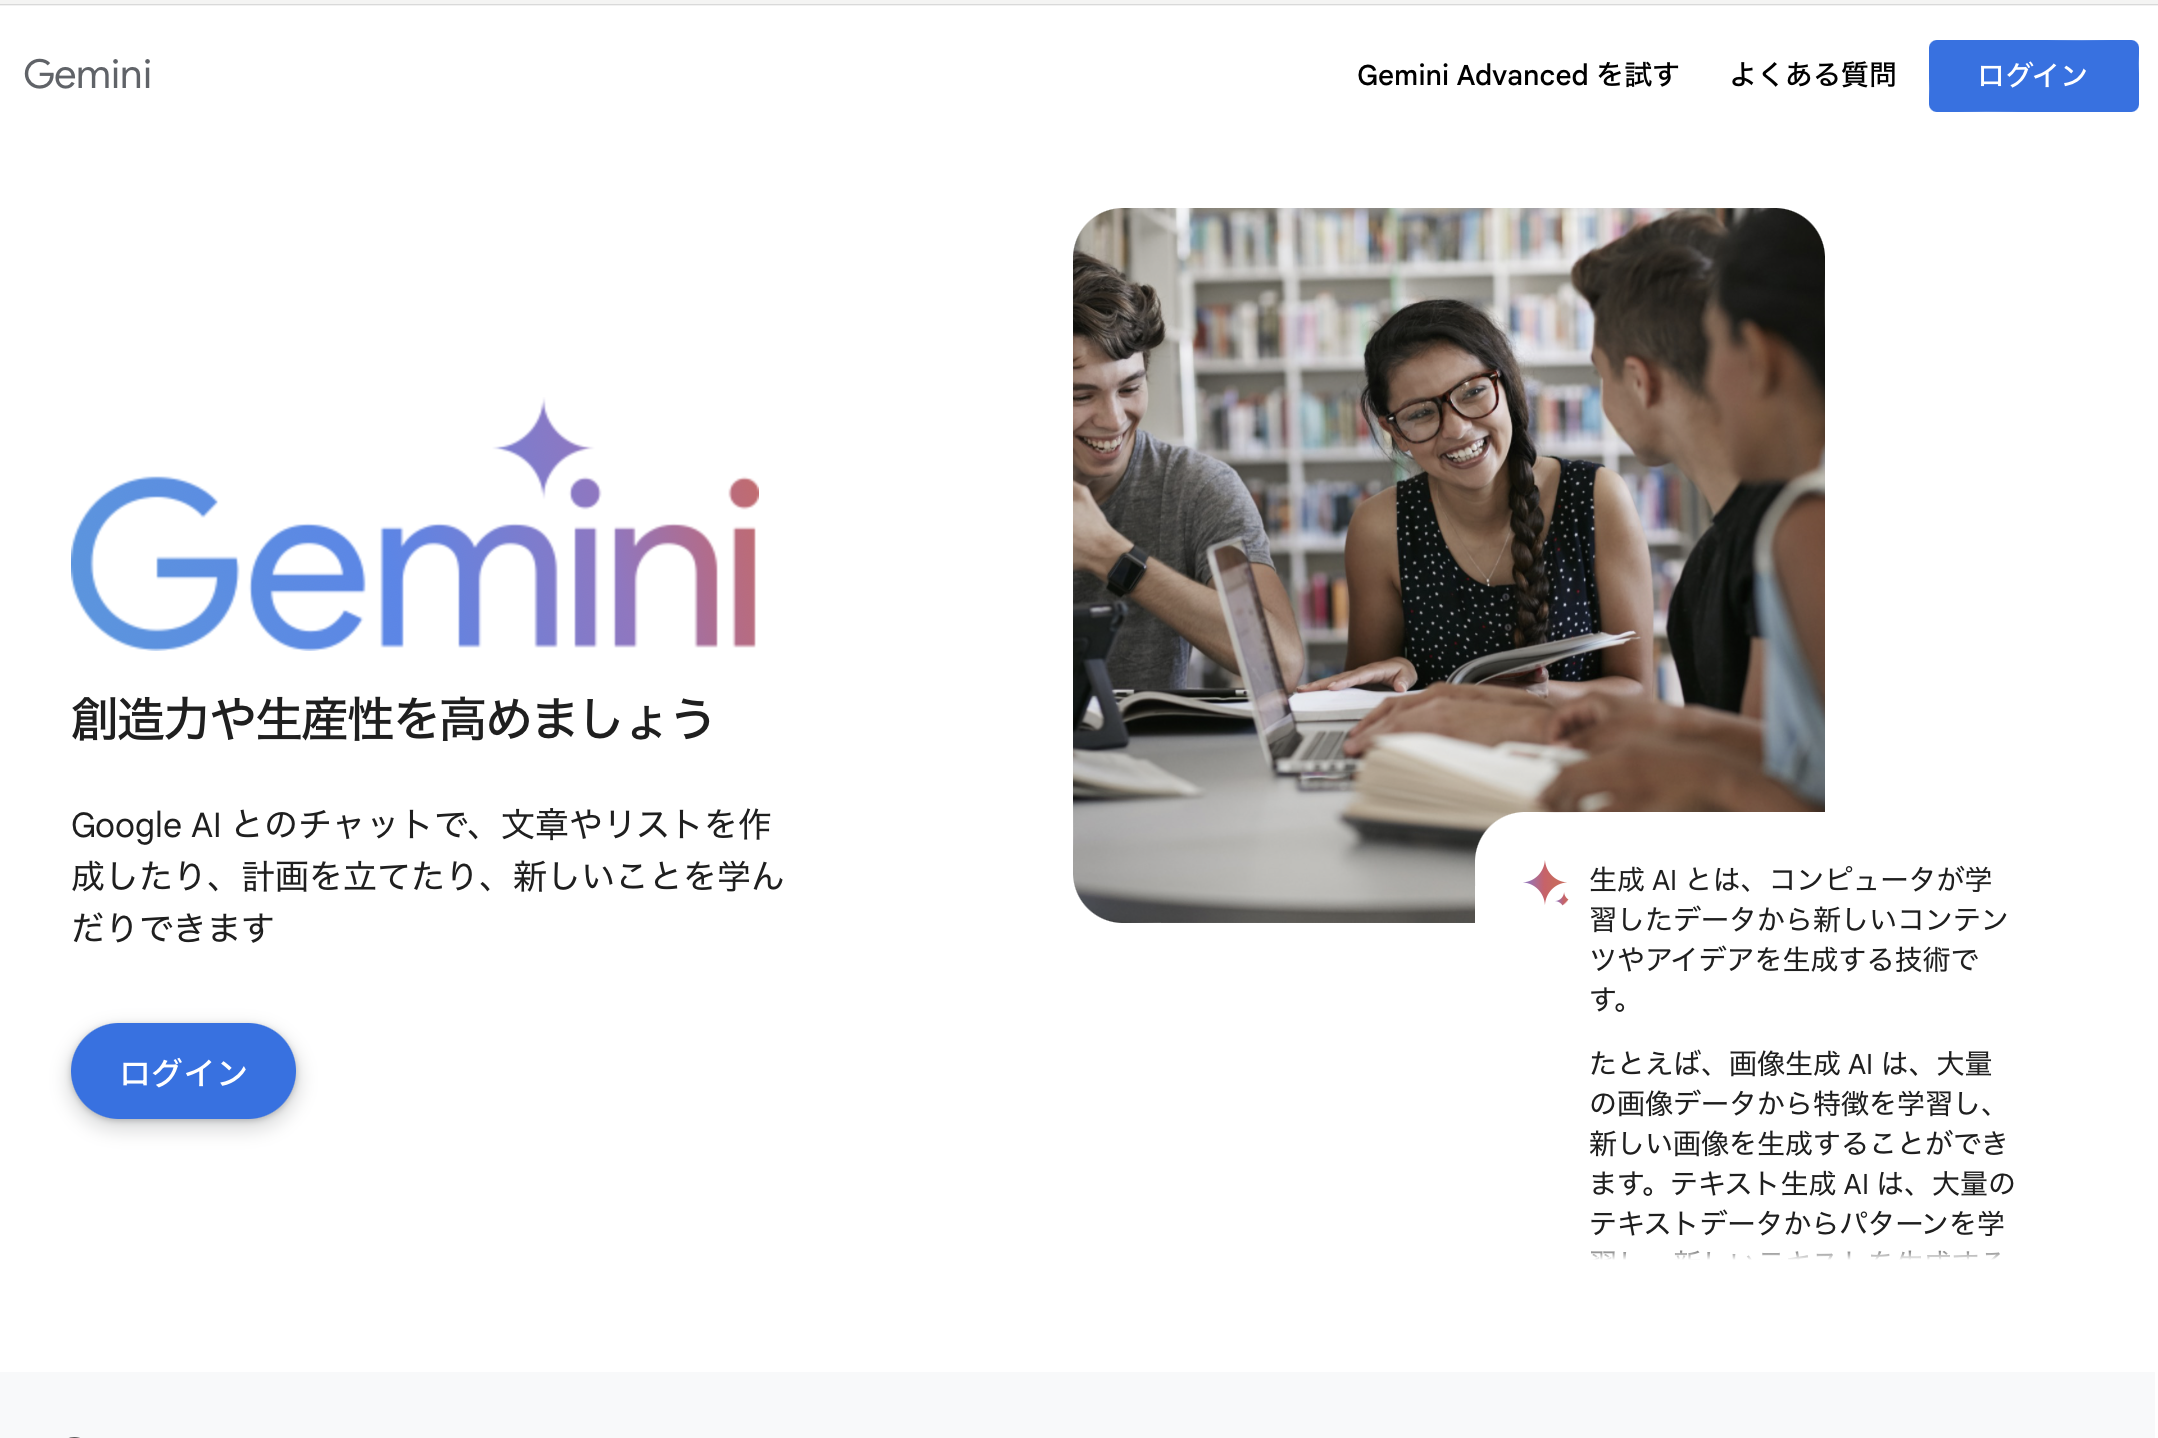 L’IA “Bard” de Google renommée “Gemini”, nouveau service “Gemini Advanced” et application pour smartphone disponibles – INTERNET Watch